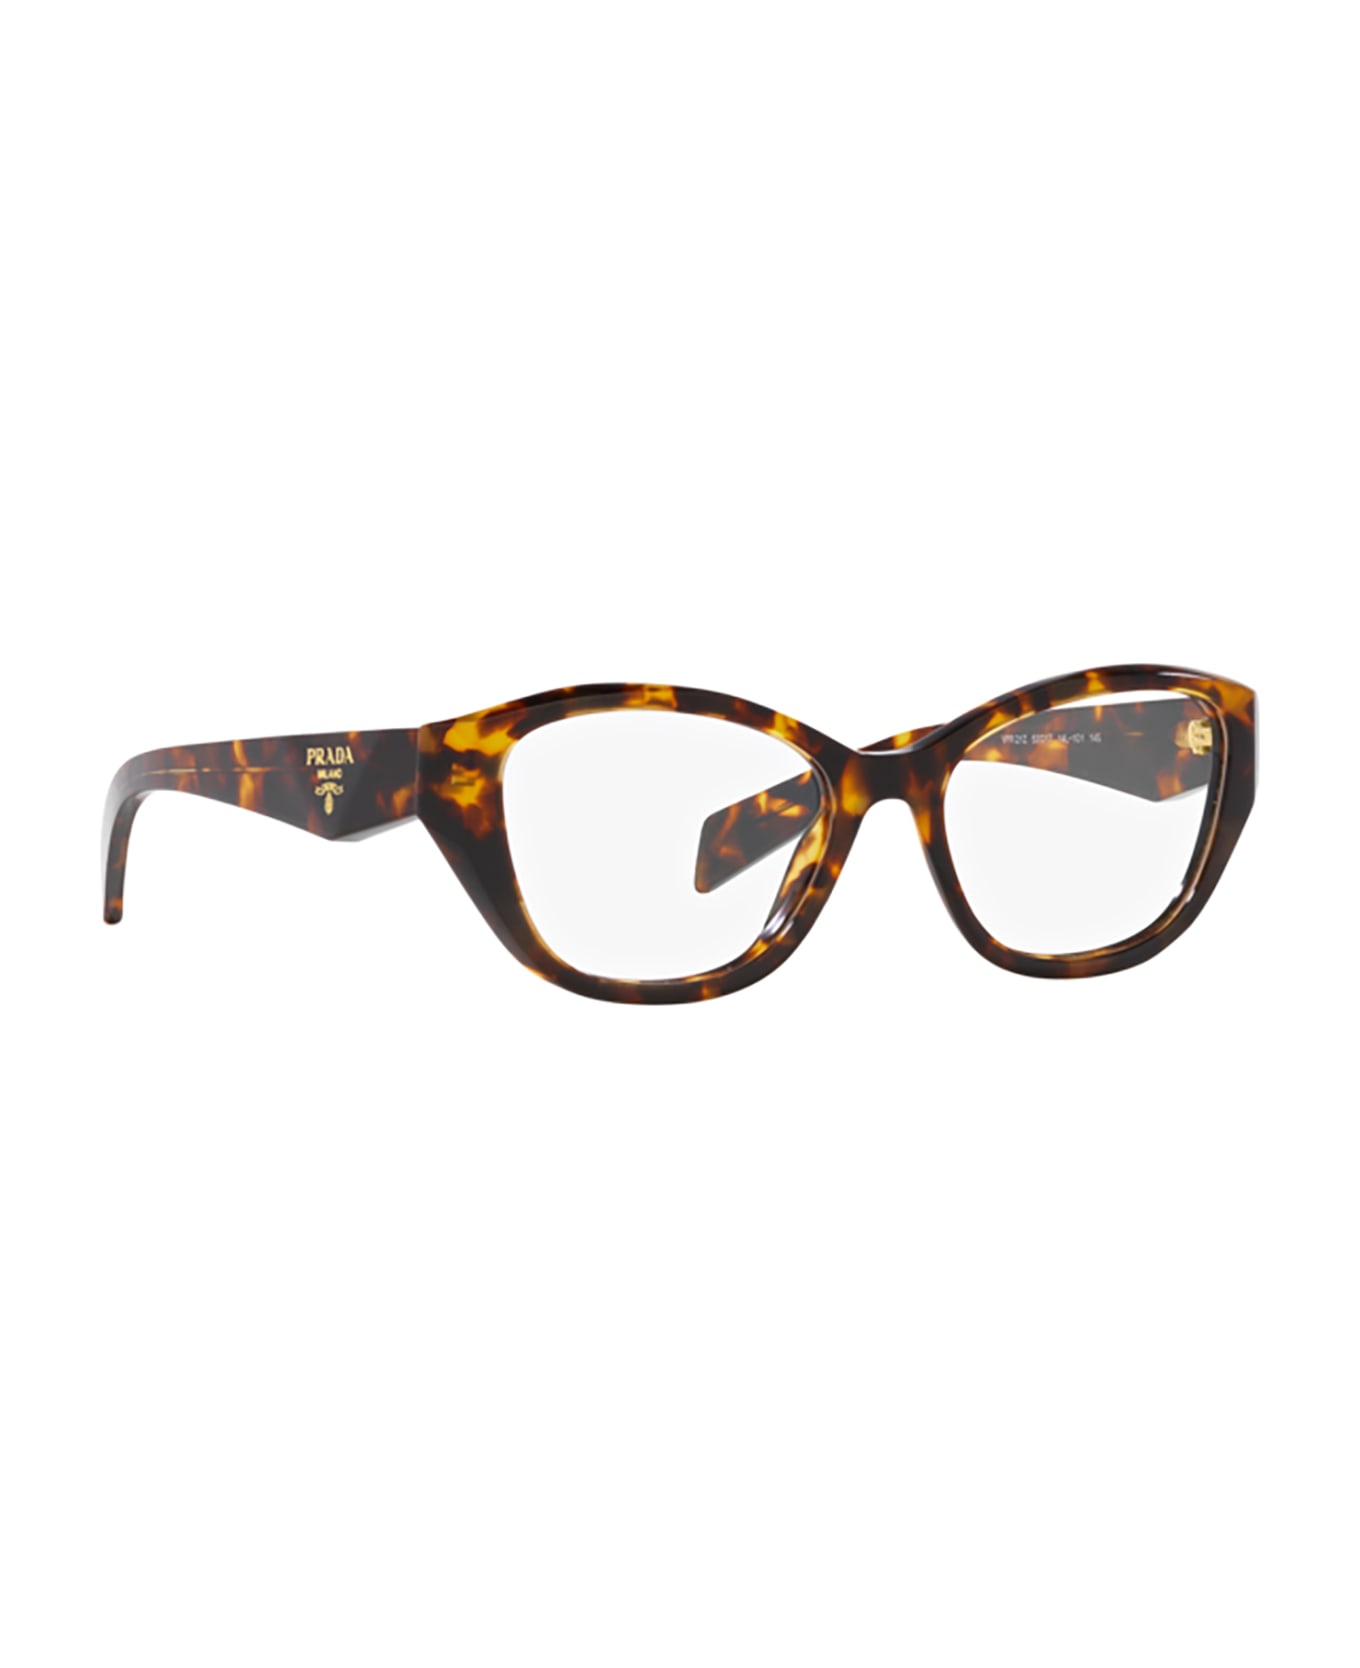 Prada Eyewear Pr 21zv Honey Tortoise Glasses - Honey Tortoise